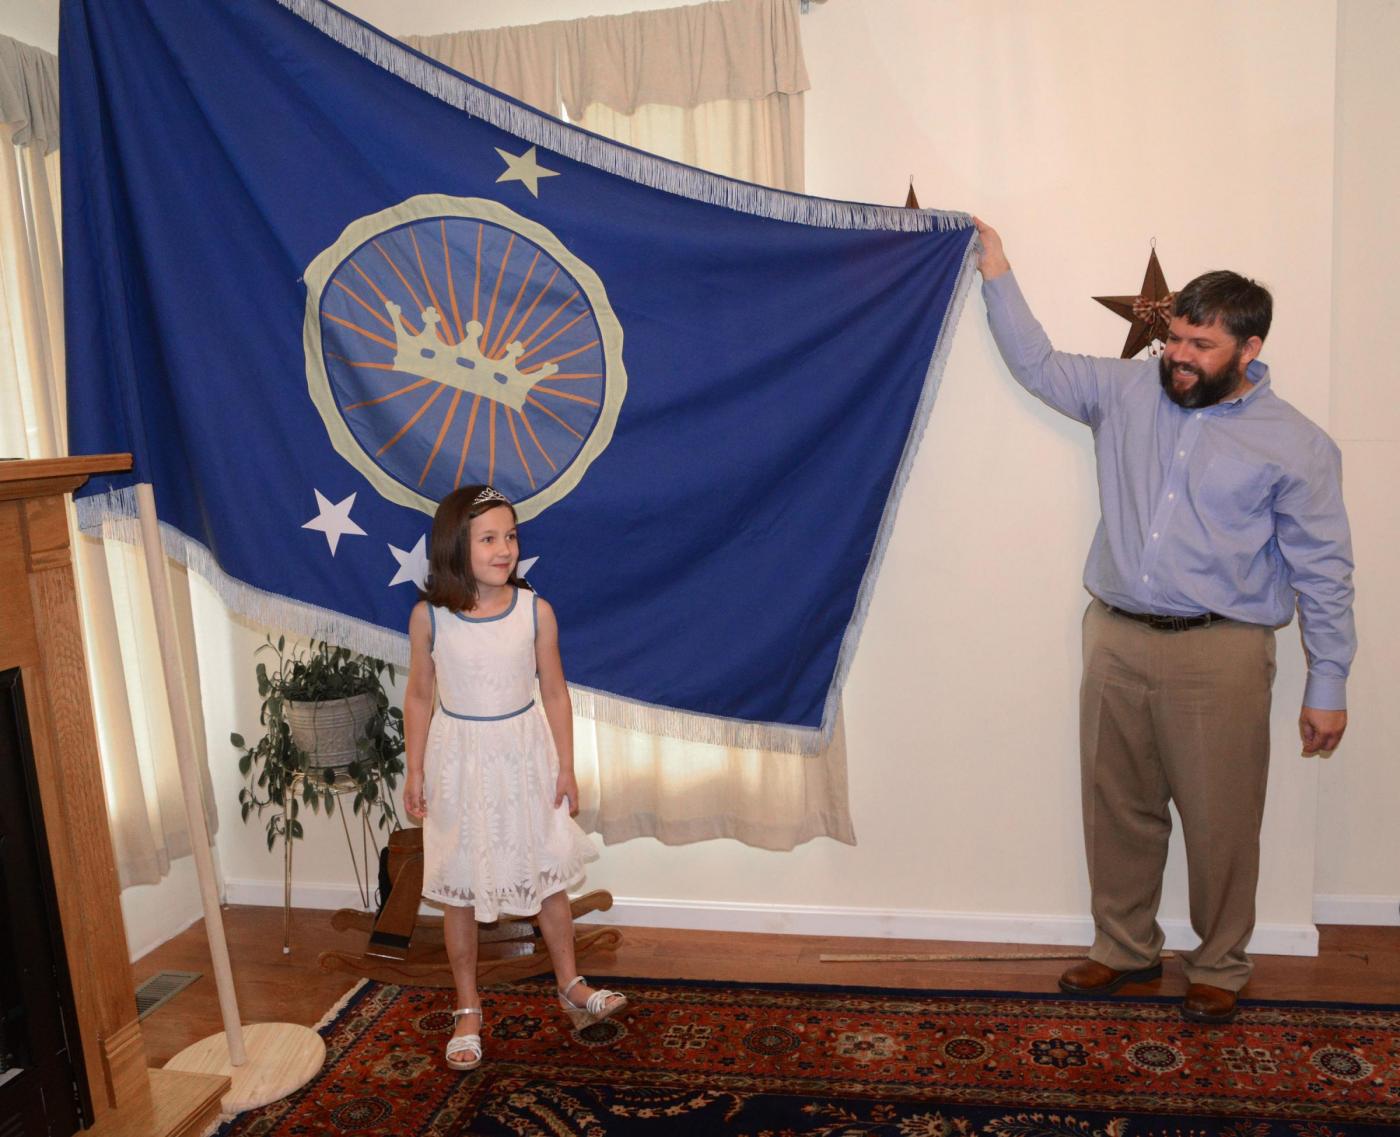 Bimba di 7 anni sogna di essere una principessa: il papà le compra un Regno